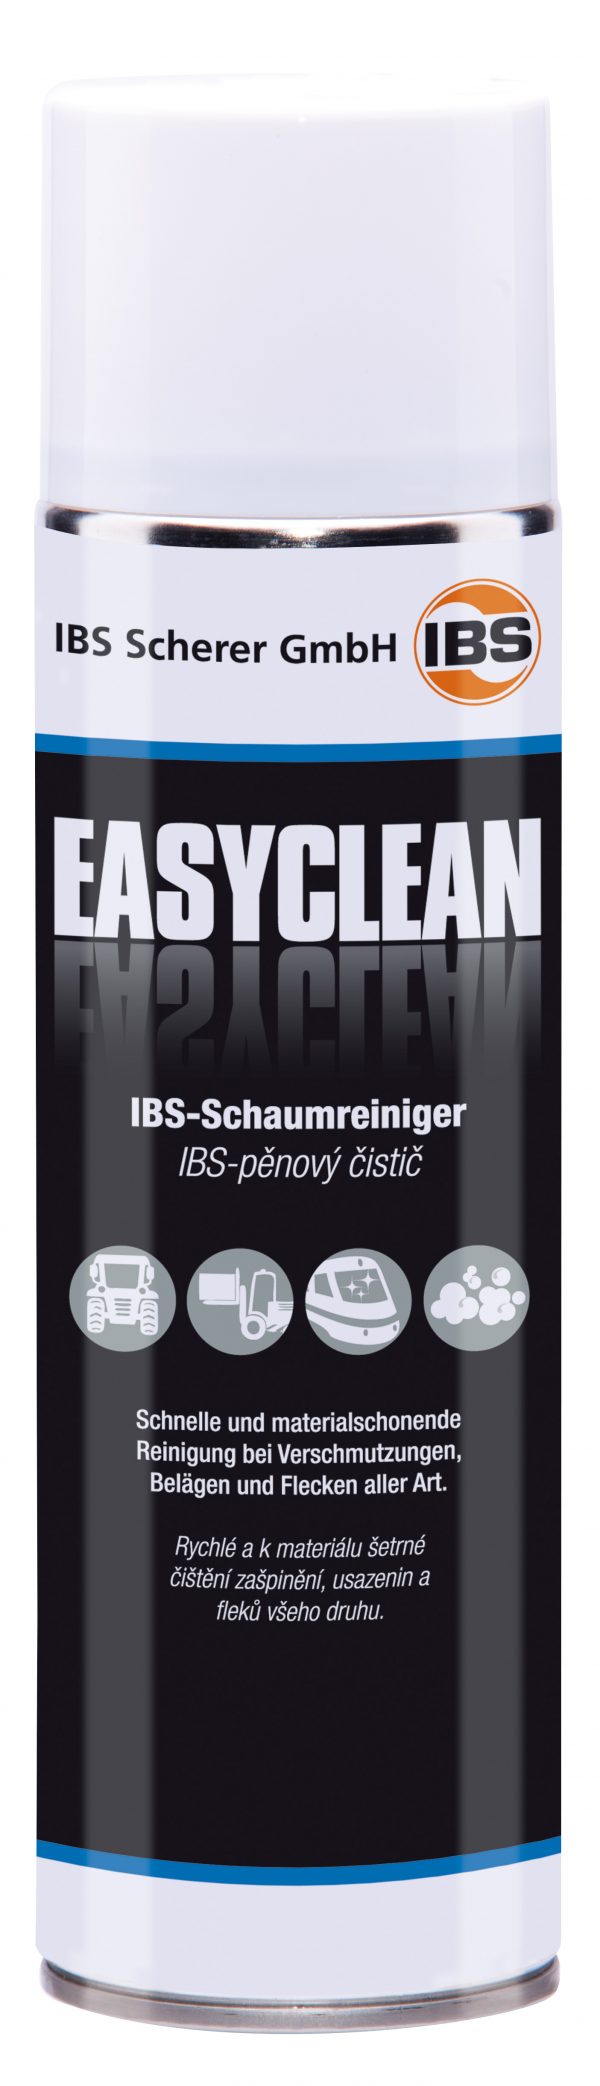 IBS-Schuimreiniger EasyClean